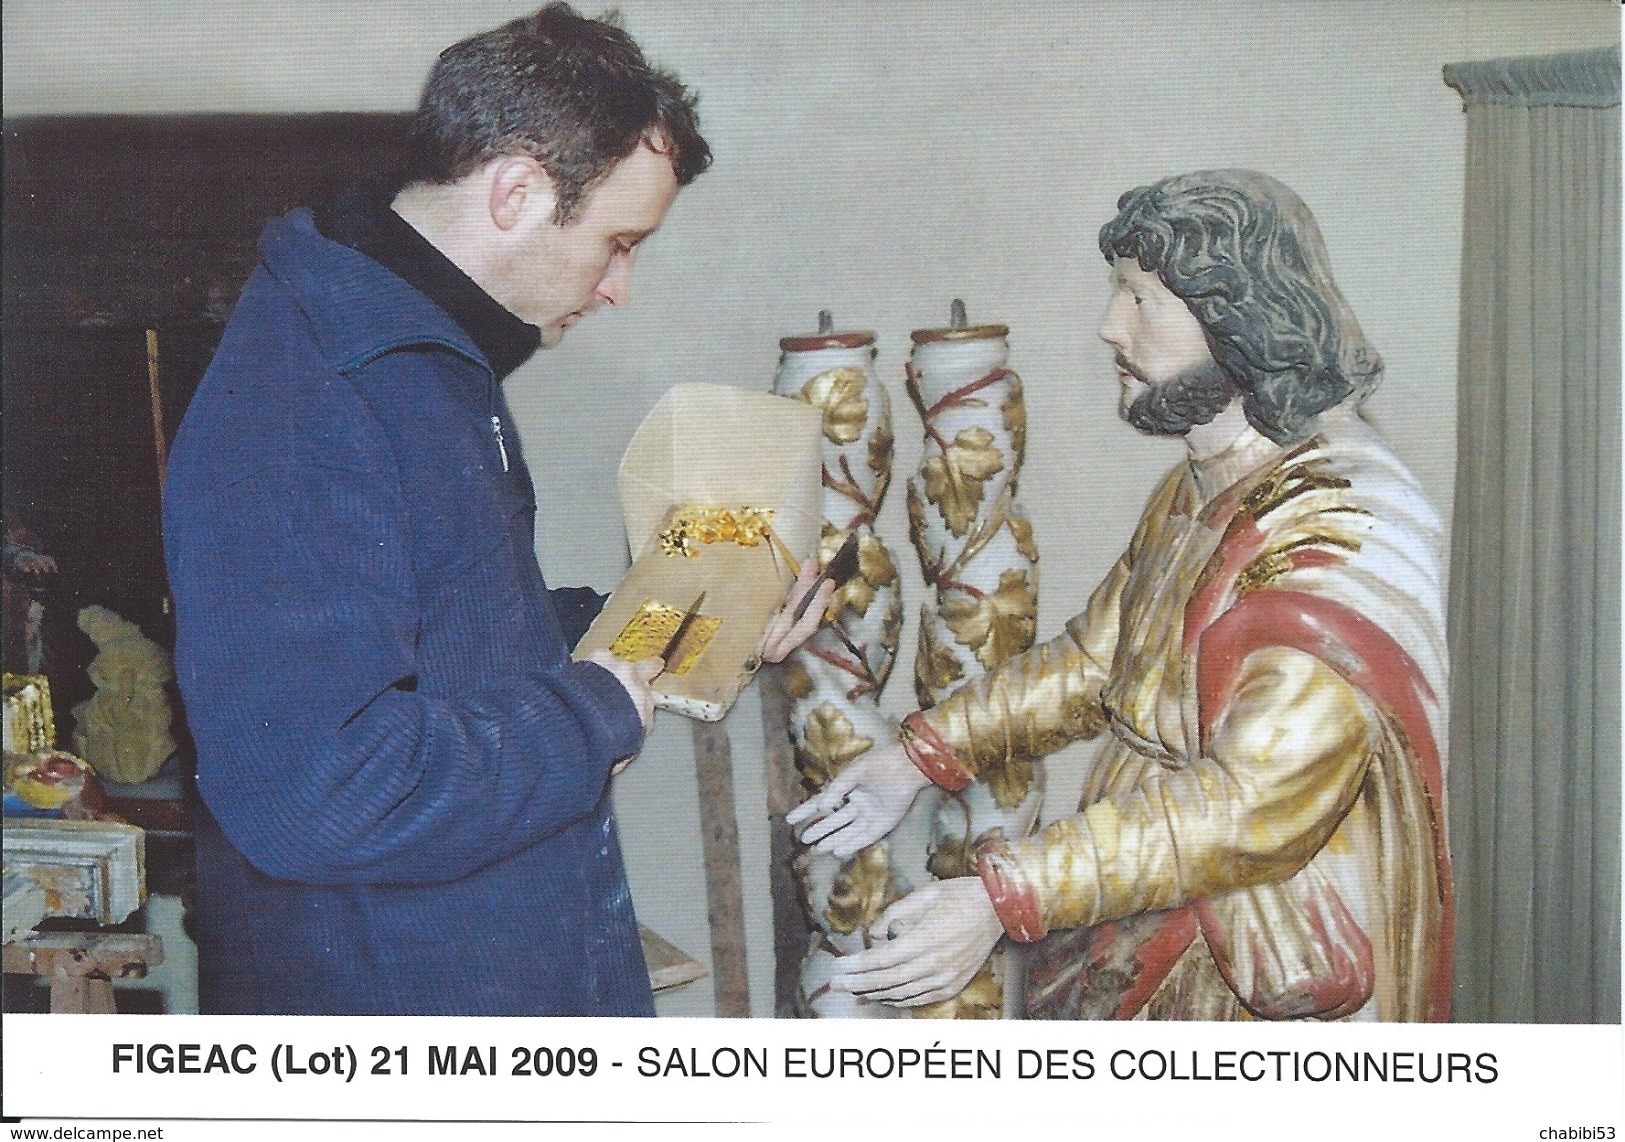 46 - FIGEAC - SALON EUROPEEN DES COLLECTIONNEURS - MAI 2009 - Borse E Saloni Del Collezionismo